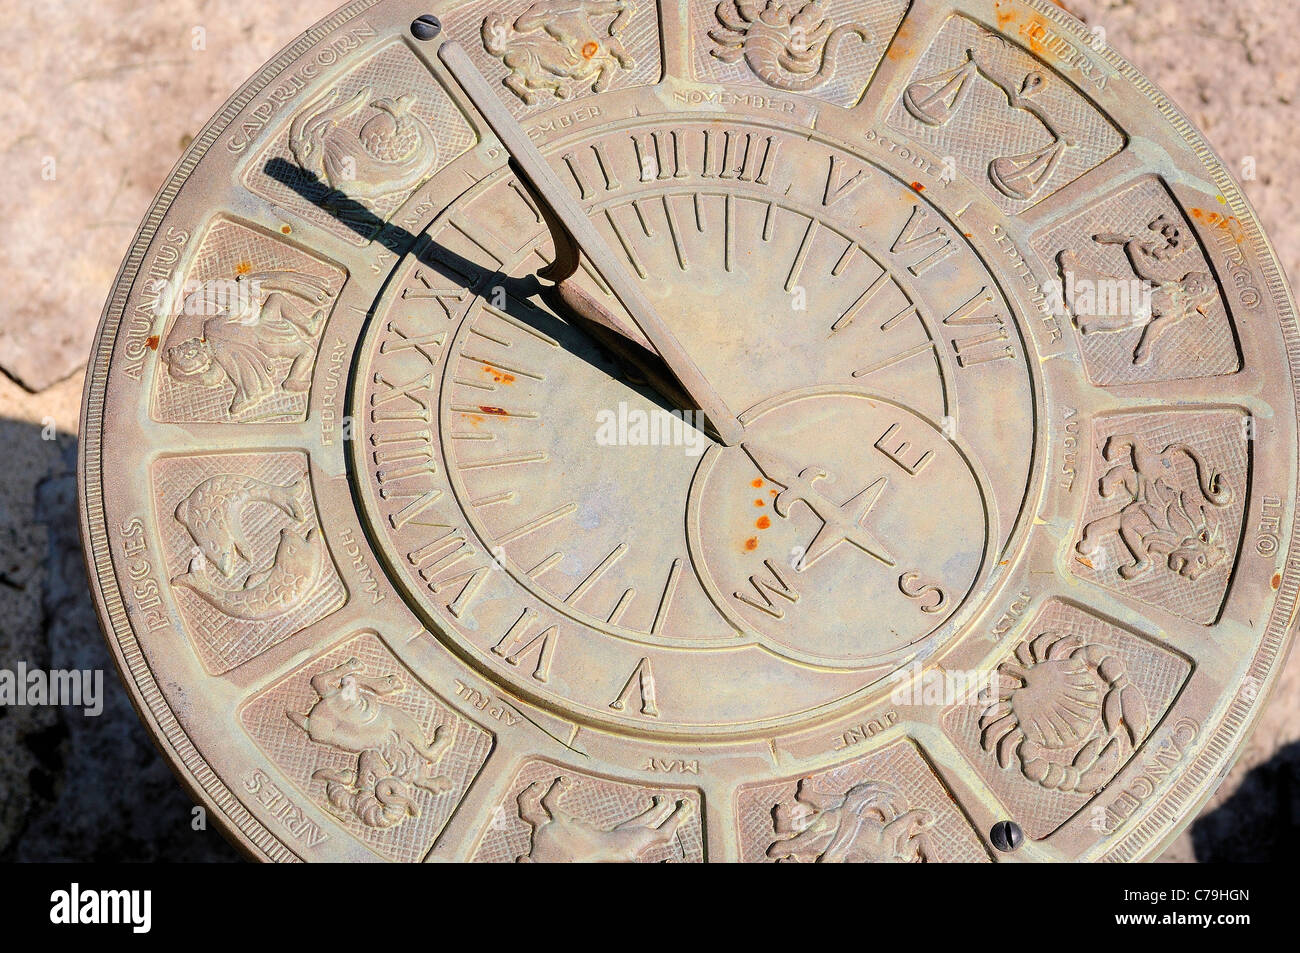 Orologio solare con segni astrologici mostra 12:00. Foto Stock